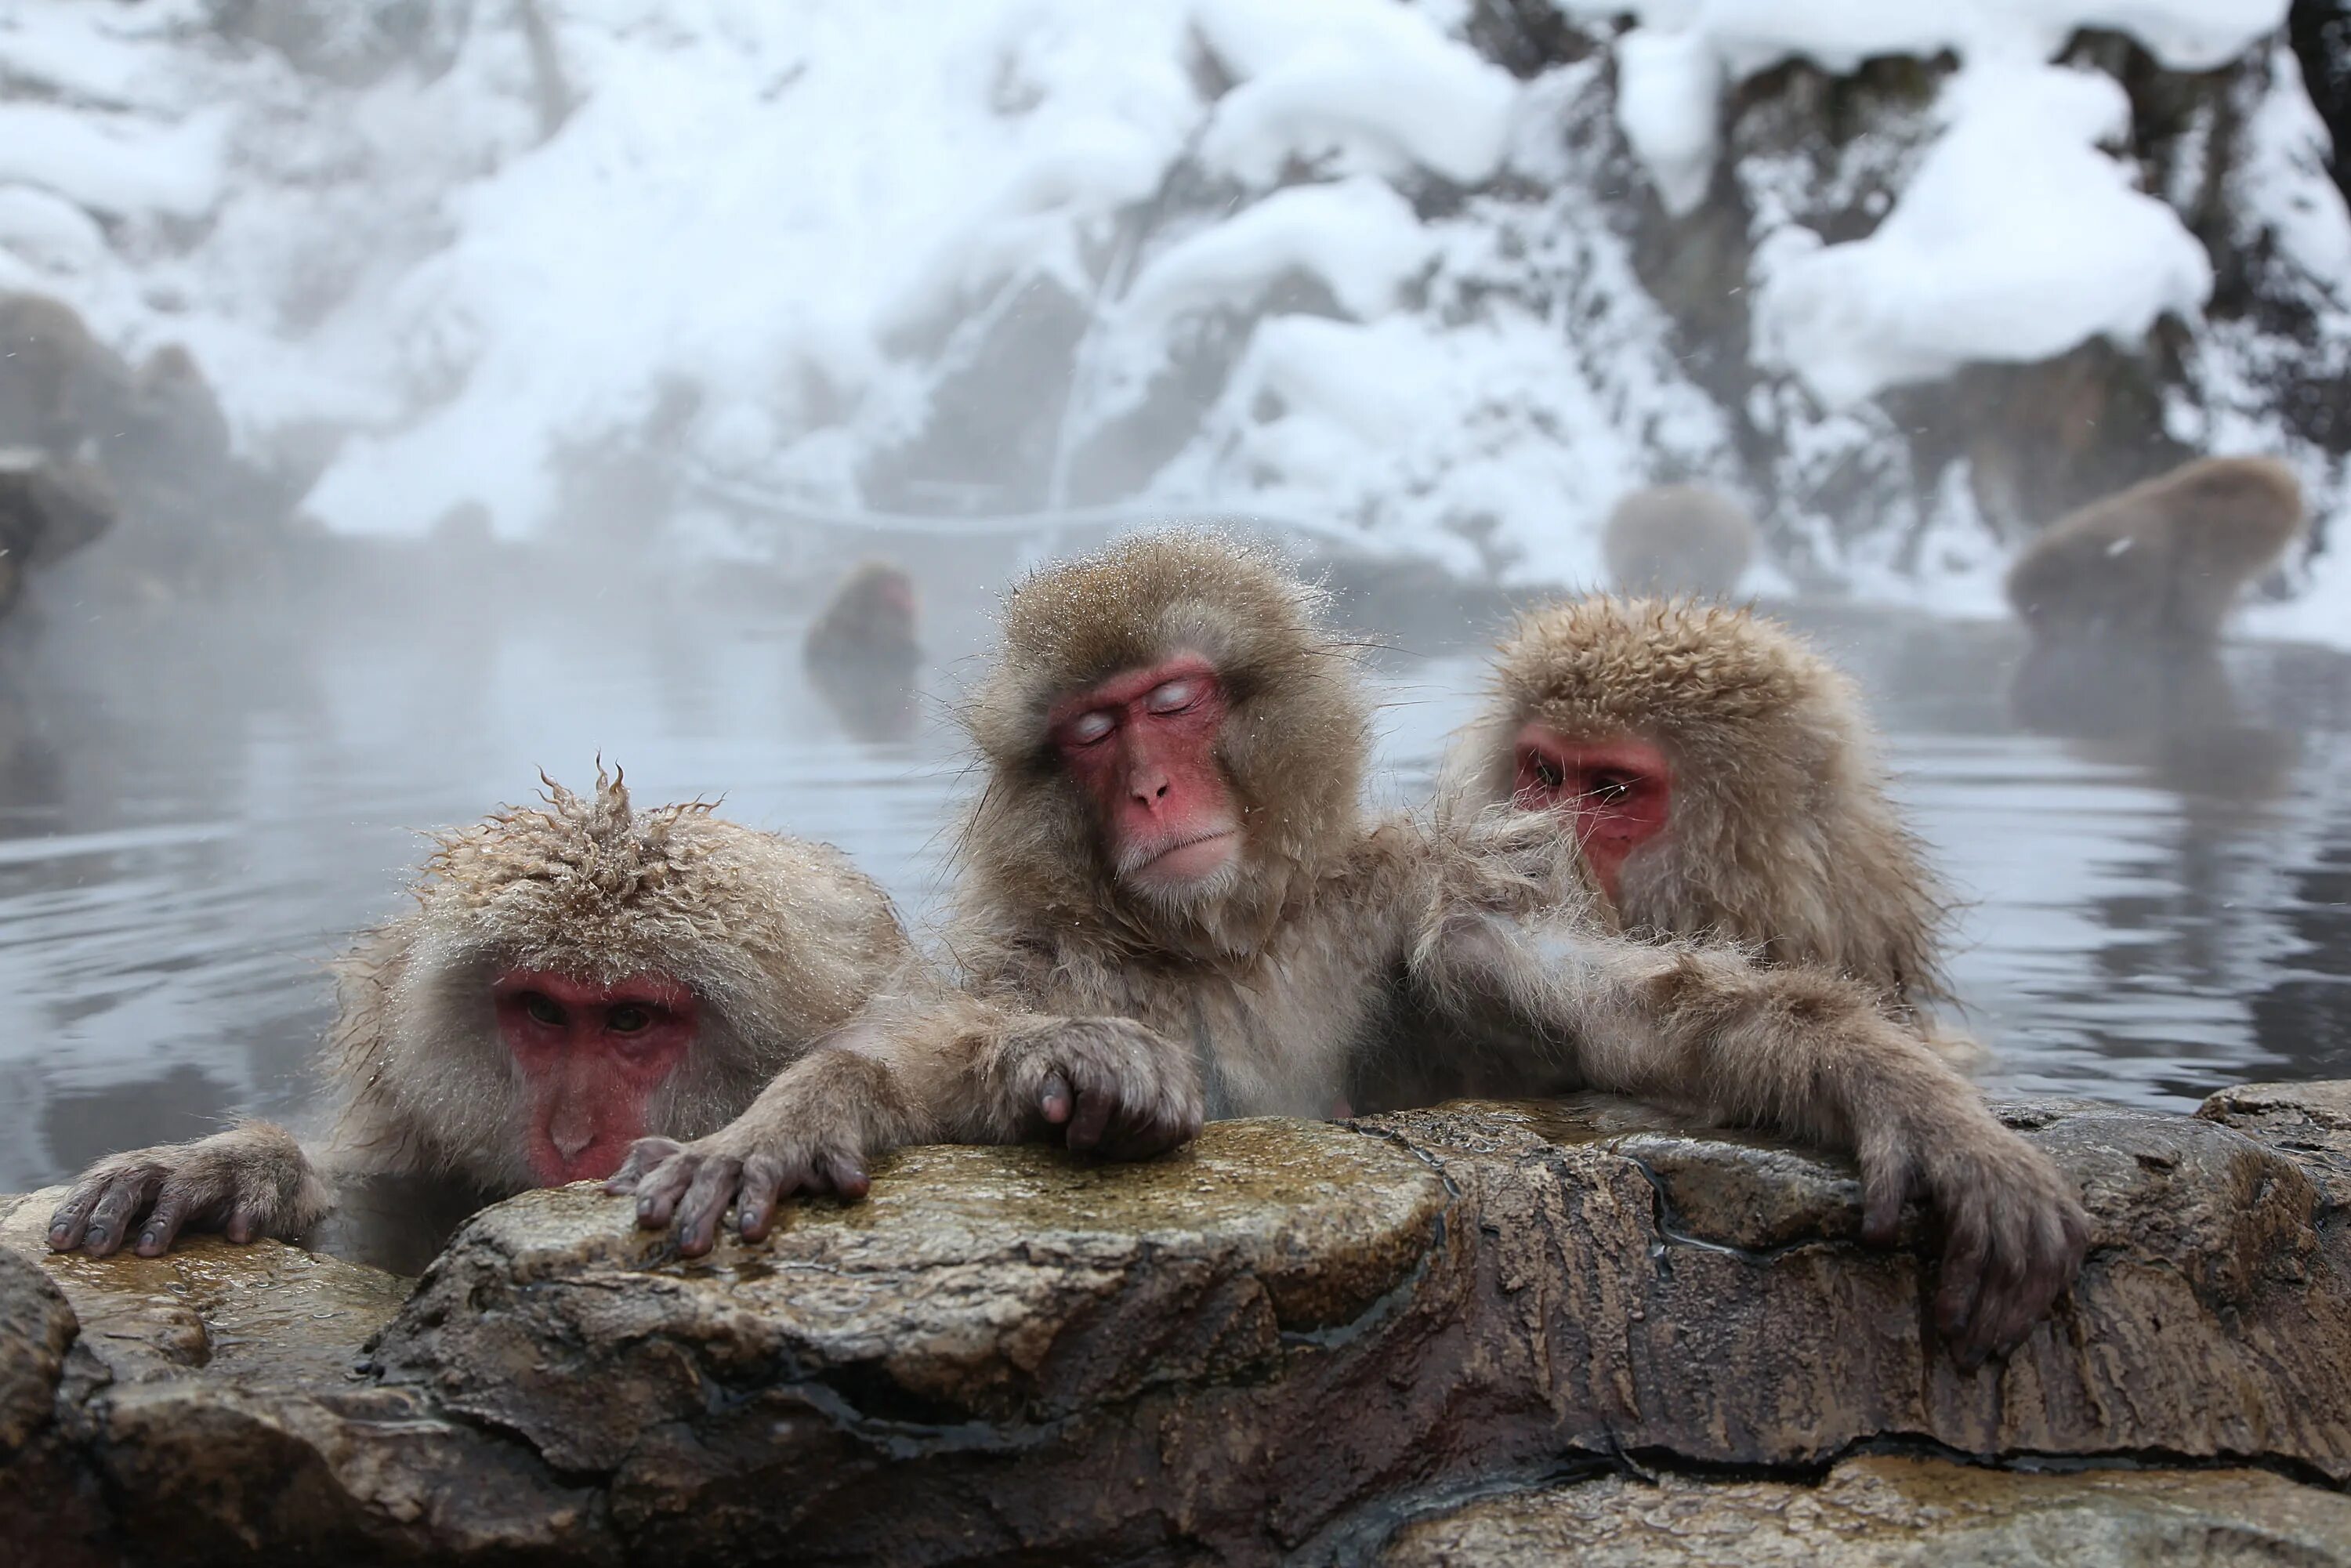 Обезьяна в кипятке. Парк Джигокудани Япония. Парк снежных обезьян Джигокудани. Макаки в горячих источниках в Японии. Японские обезьянки греются в горячих источниках.